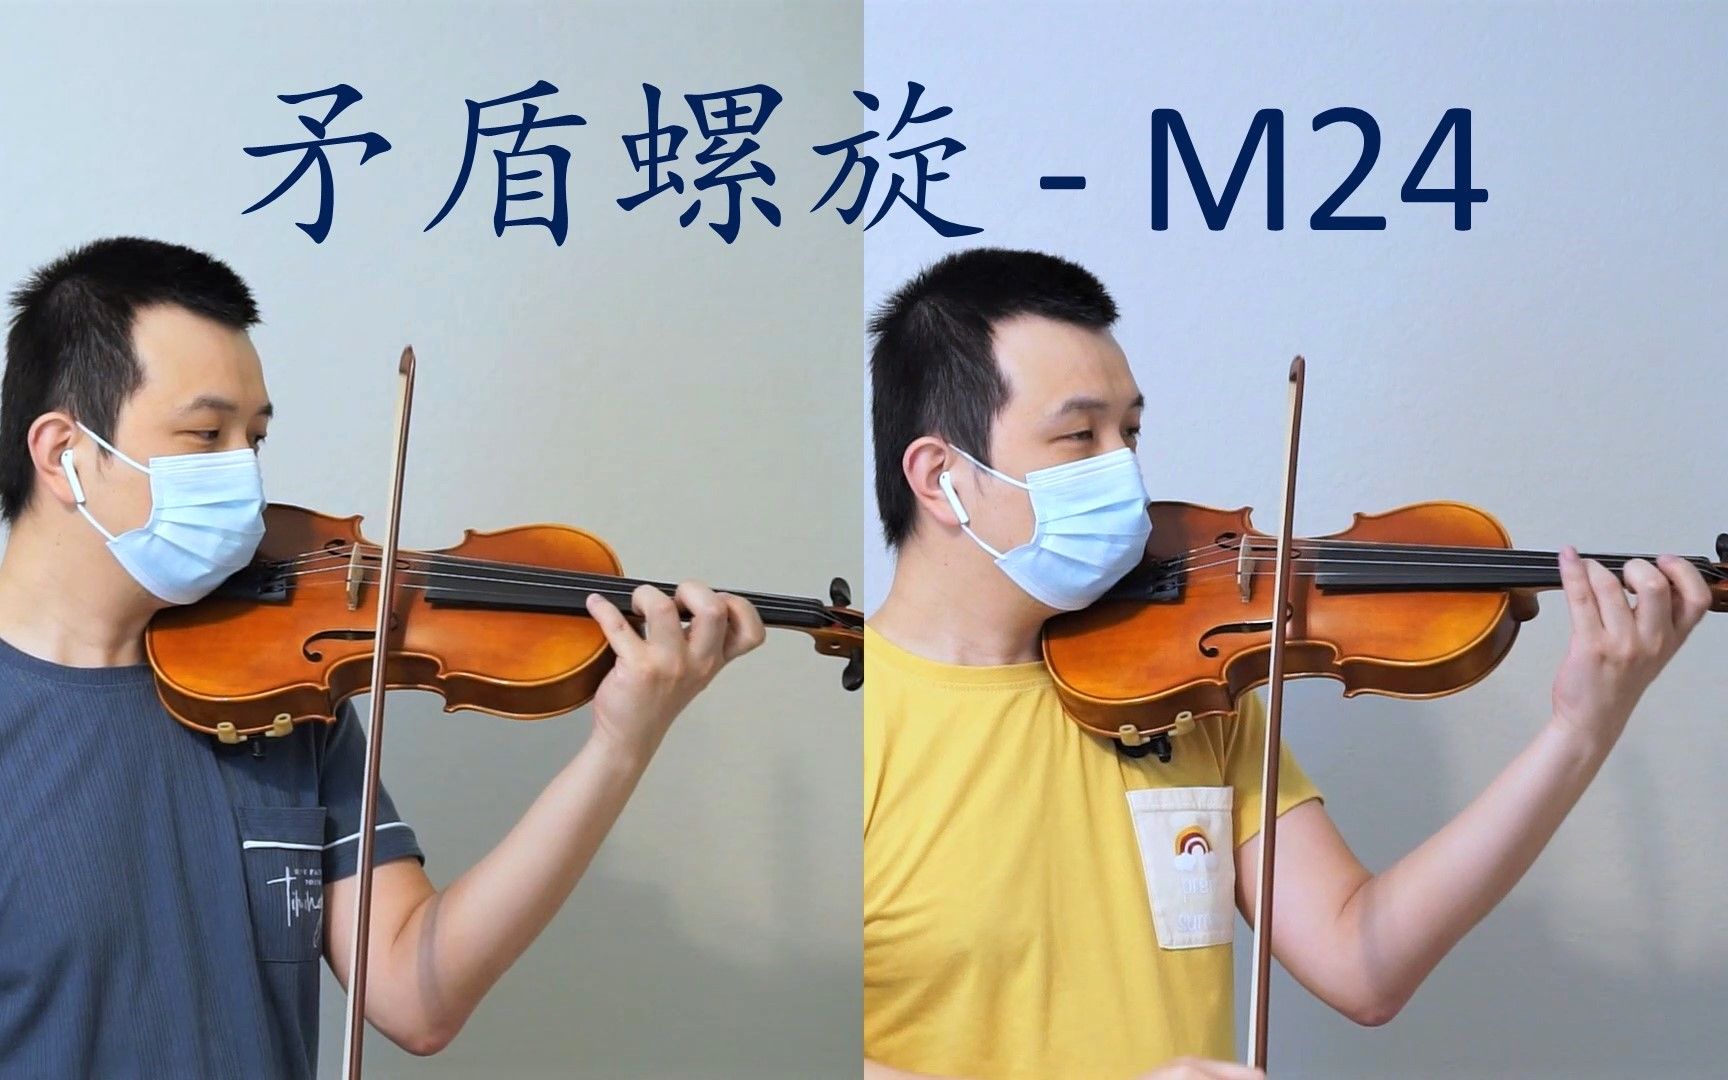 【小提琴】矛盾螺旋 - M24 - 空之境界